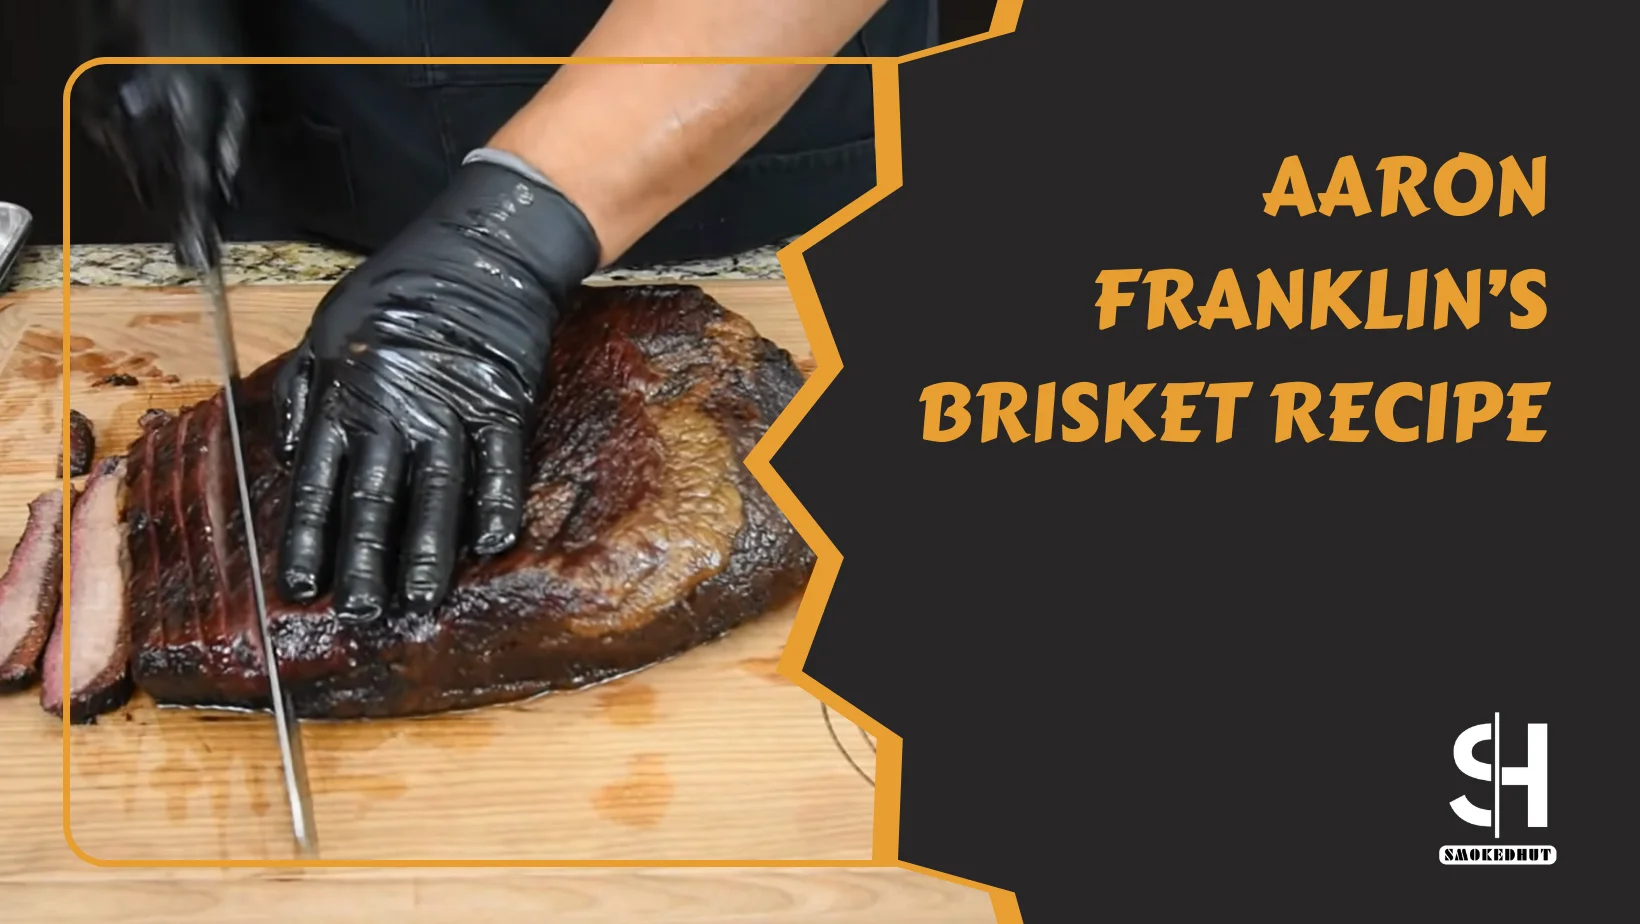 Aaron Franklin's Brisket Recipe